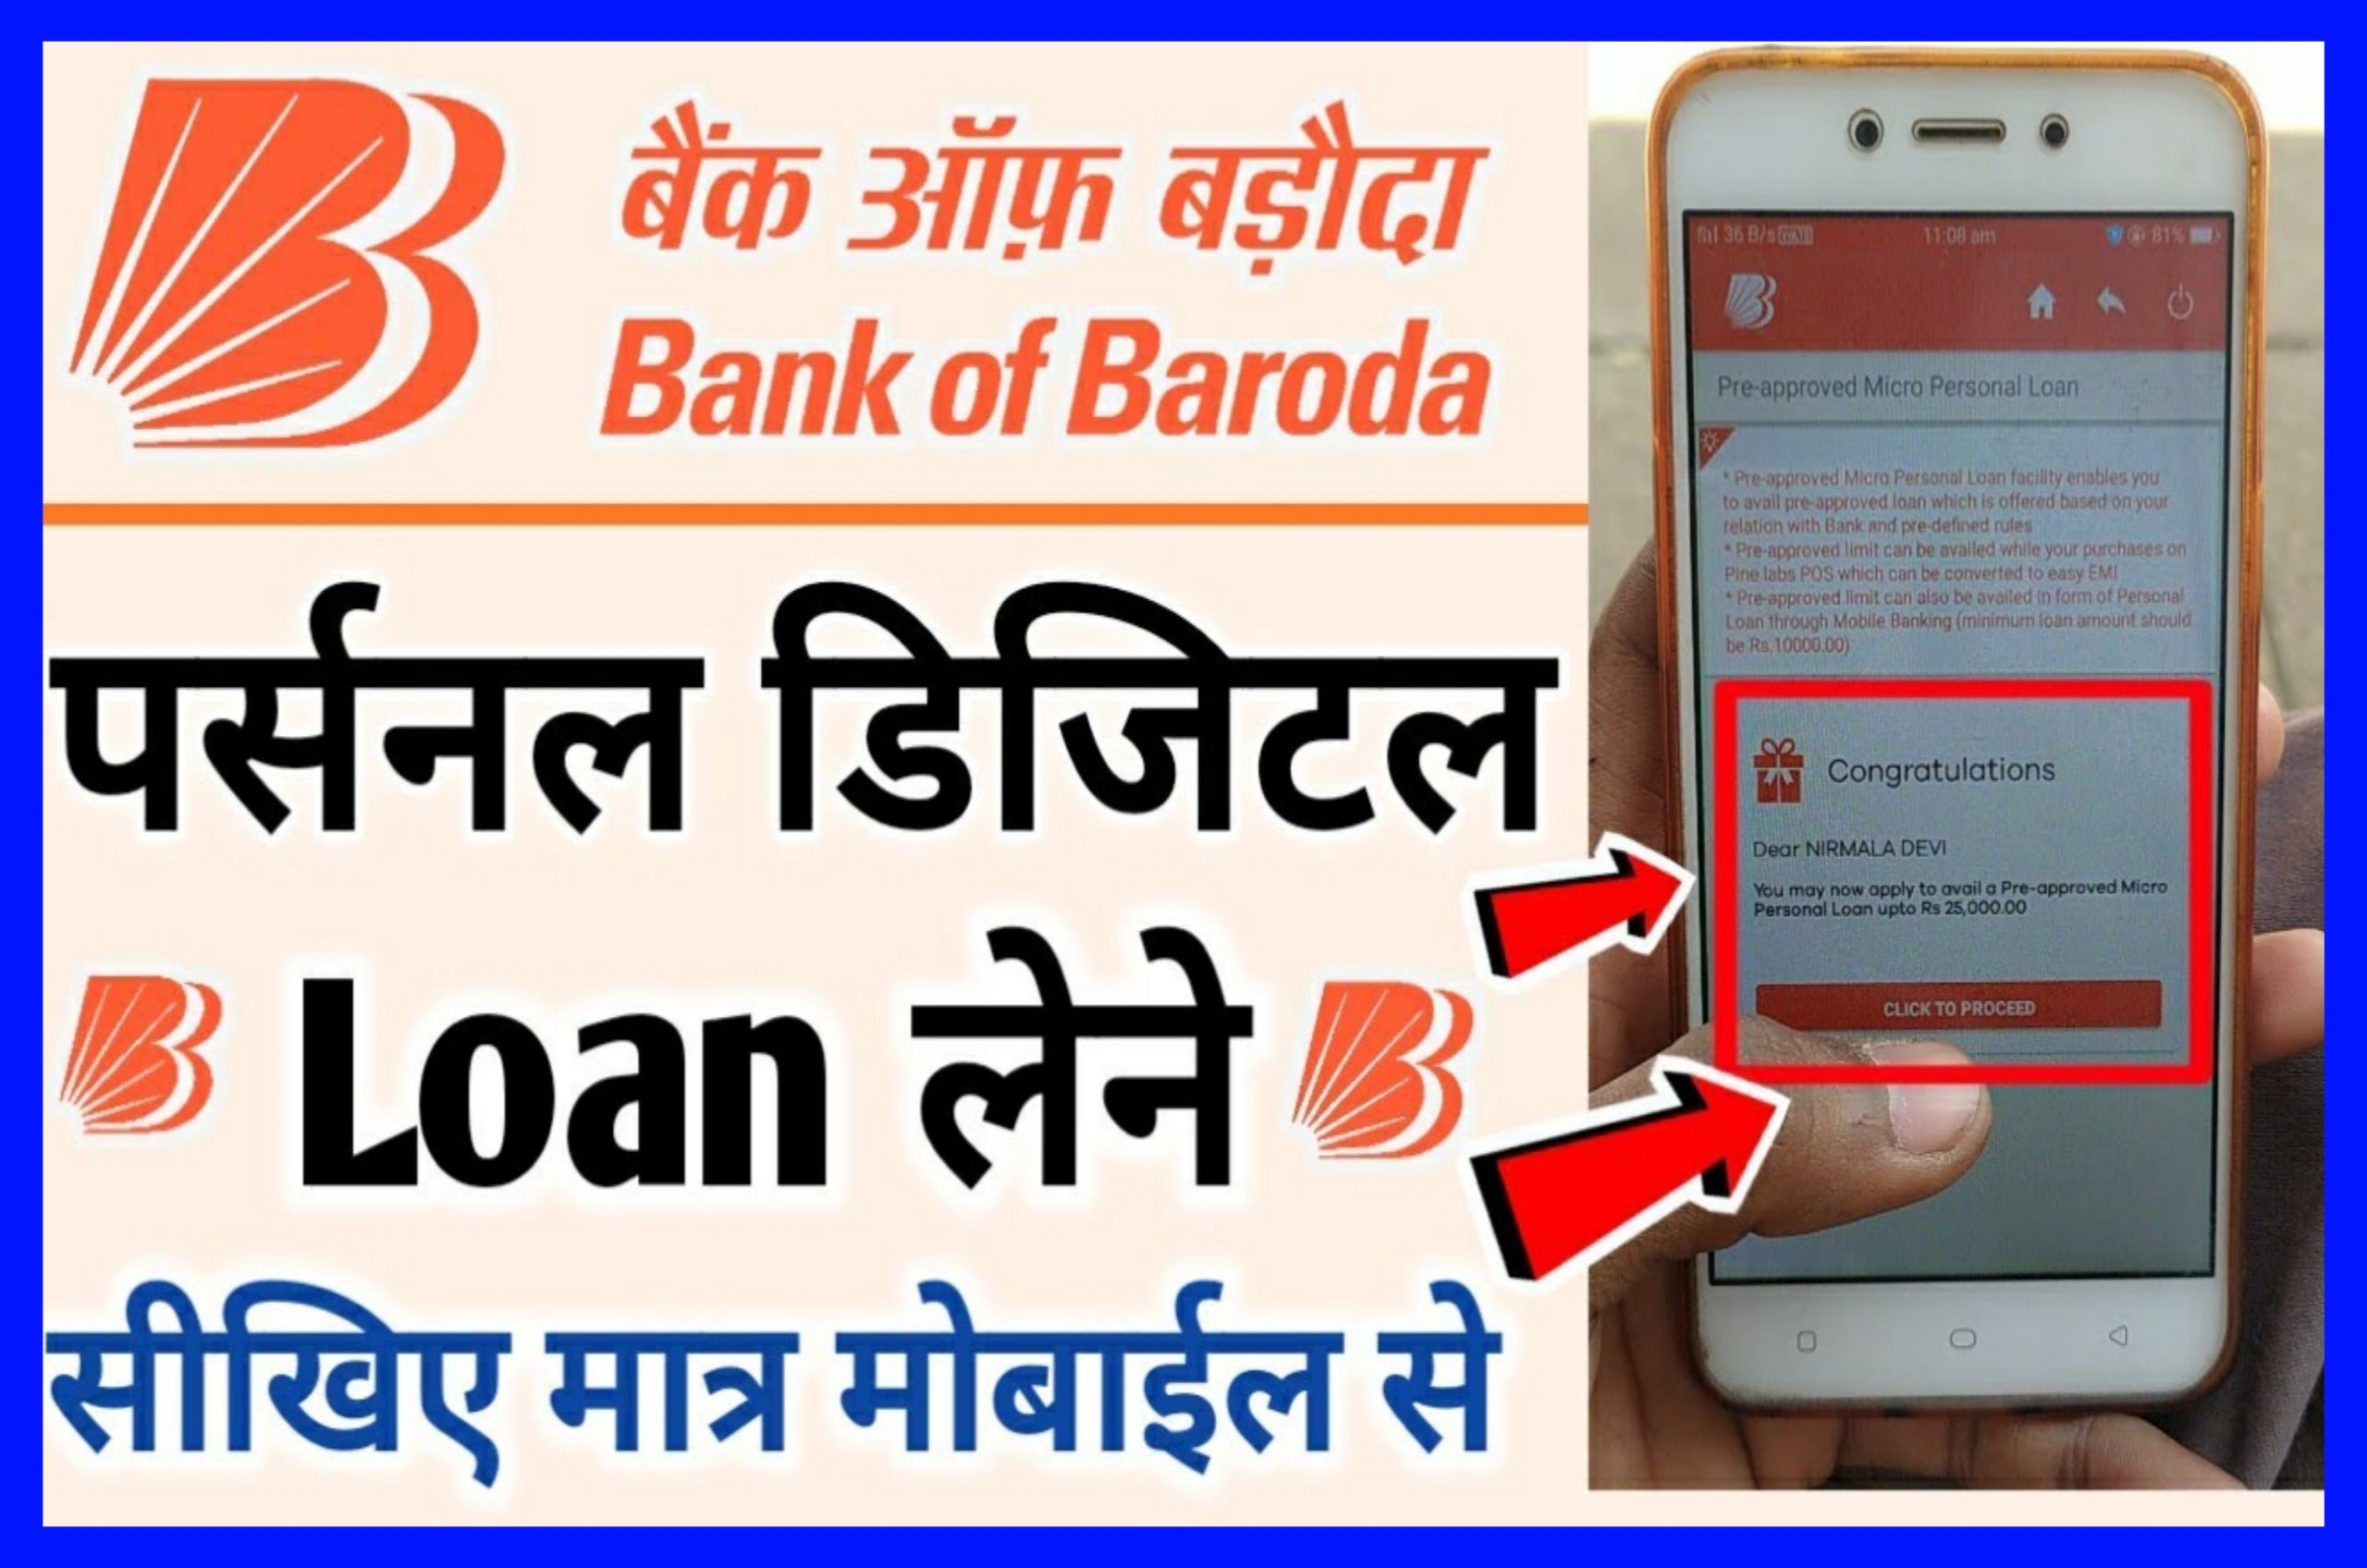 Bank of Baroda Digital Loan Apply - 50000 का लोन सीधे आपके बैंक अकाउंट में वह भी बिना बैंक जाए | Best Link